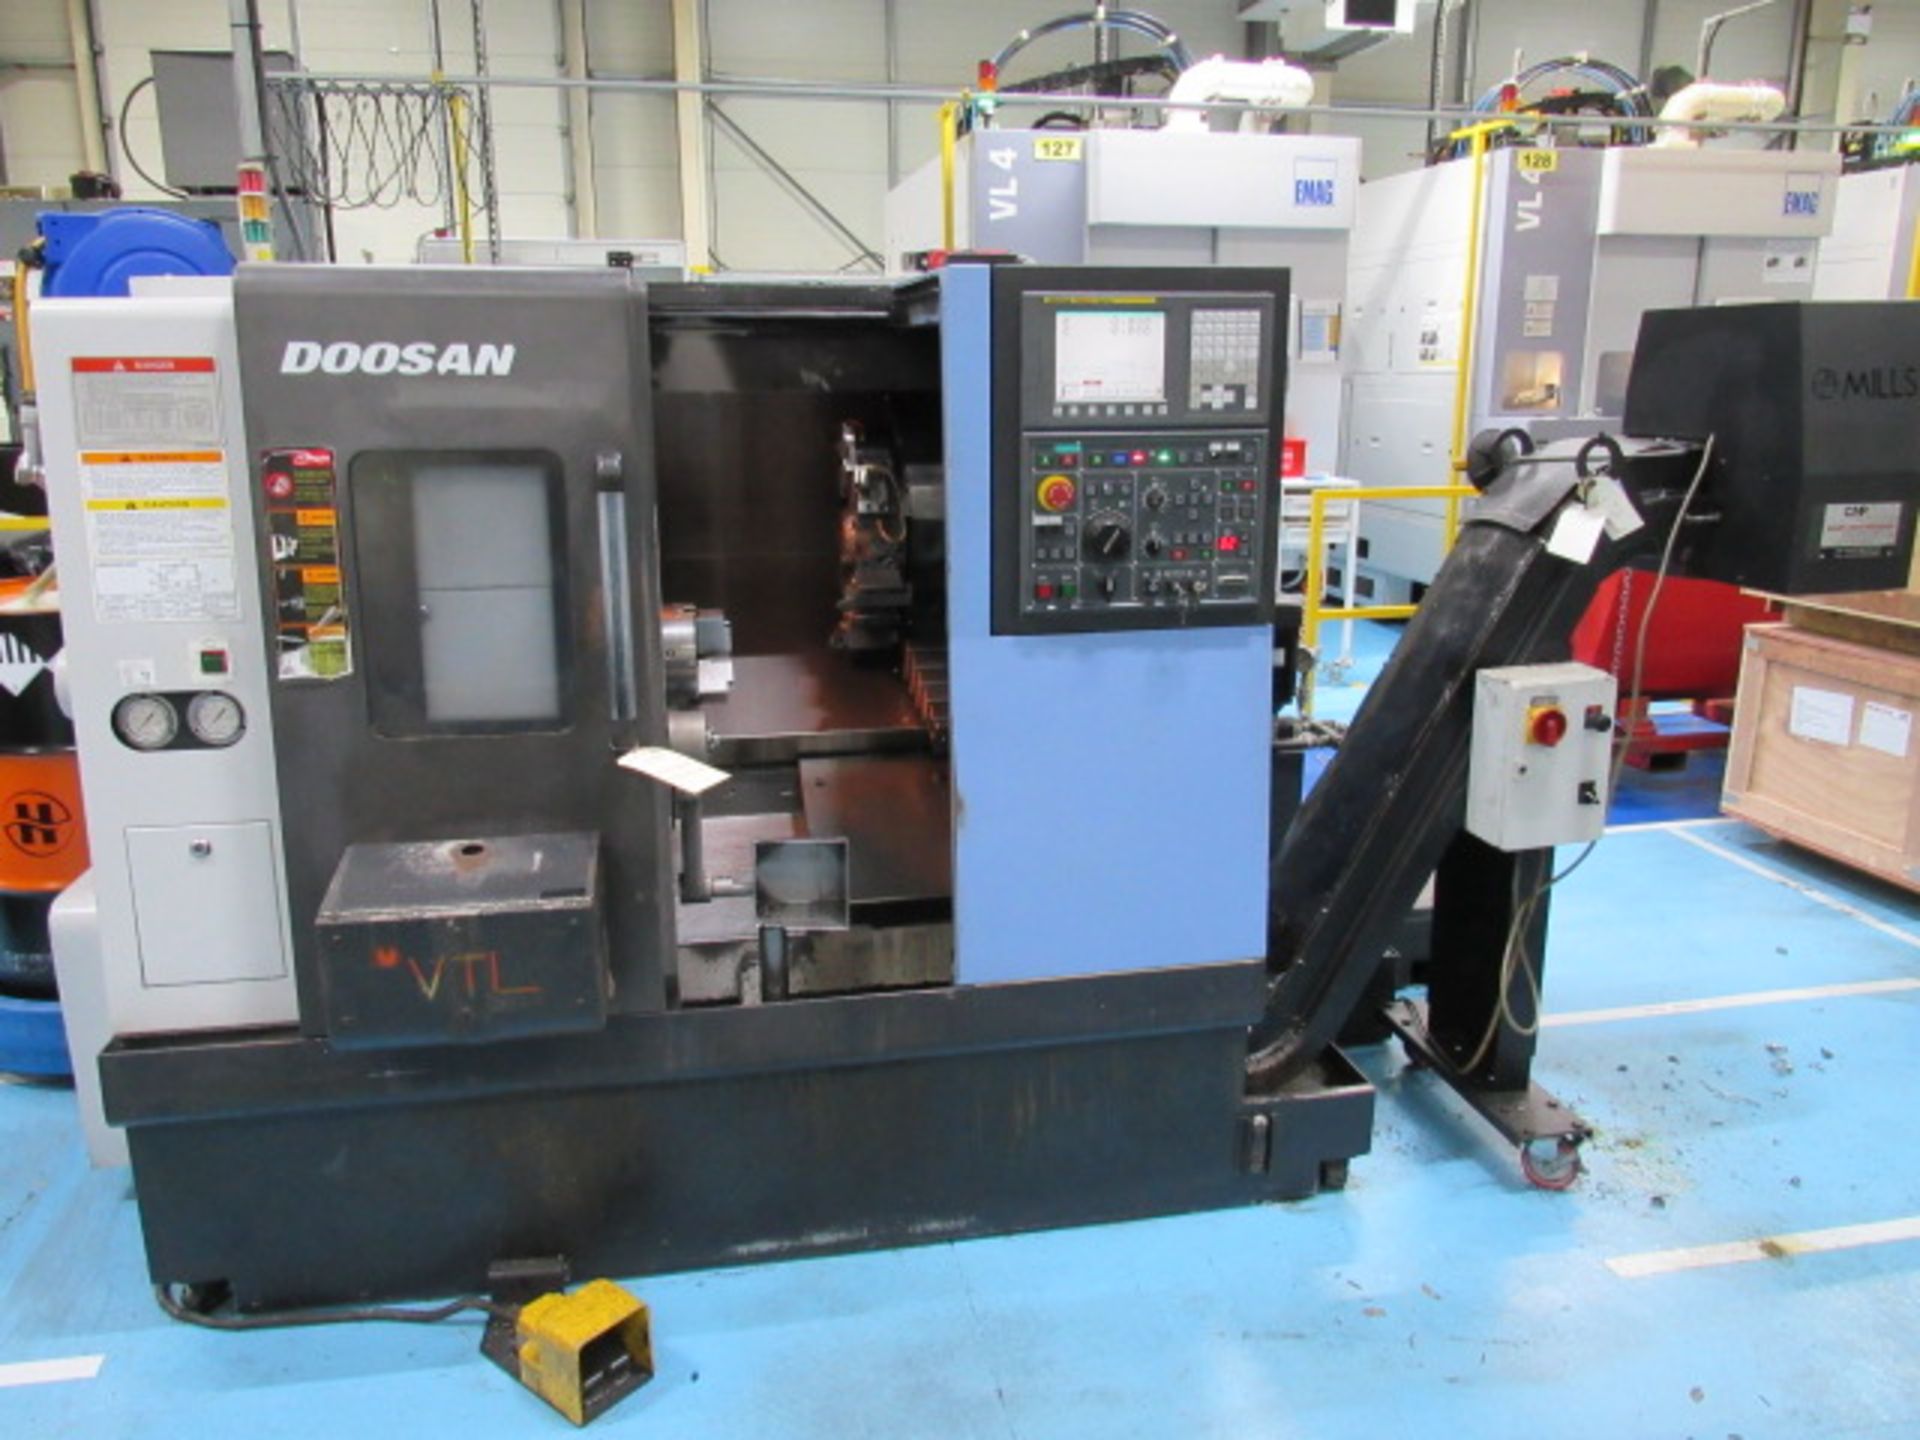 Doosan Lynx 220 B/C CNC Turning Center - Image 2 of 7